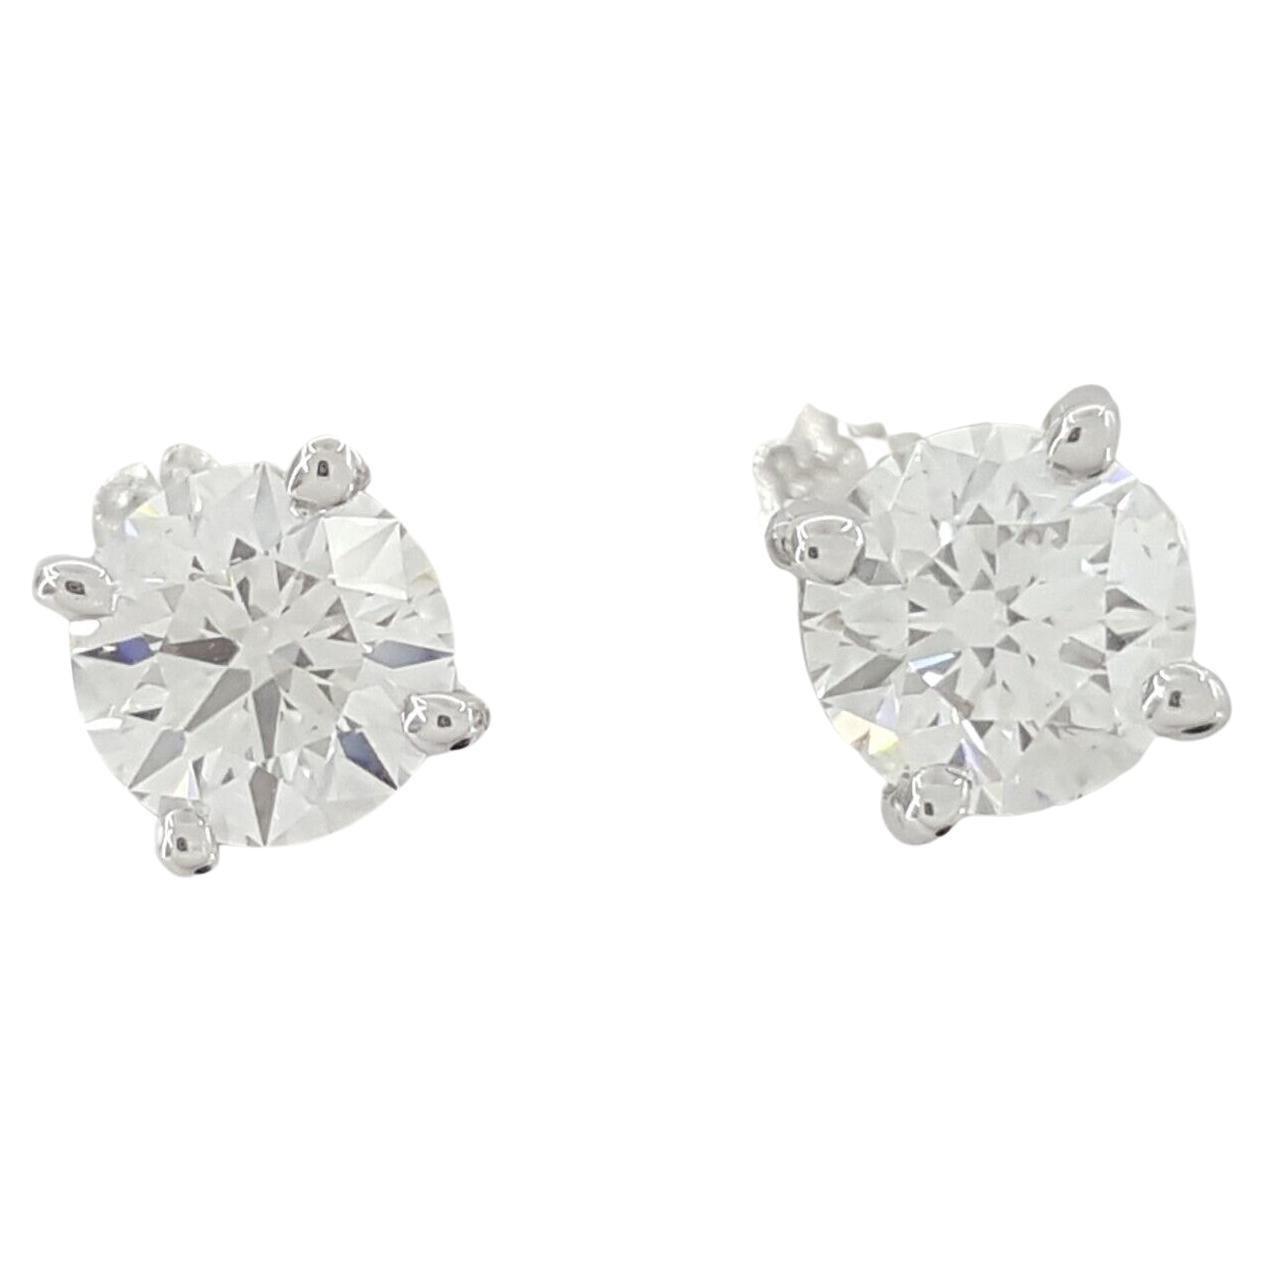 Voici une exquise paire d'Eleg en diamant de Tiffany & Co., d'une élégance intemporelle et d'une qualité de fabrication exceptionnelle.

Réalisées en platine luxueux, ces boucles d'oreilles sont ornées de deux diamants ronds naturels de taille